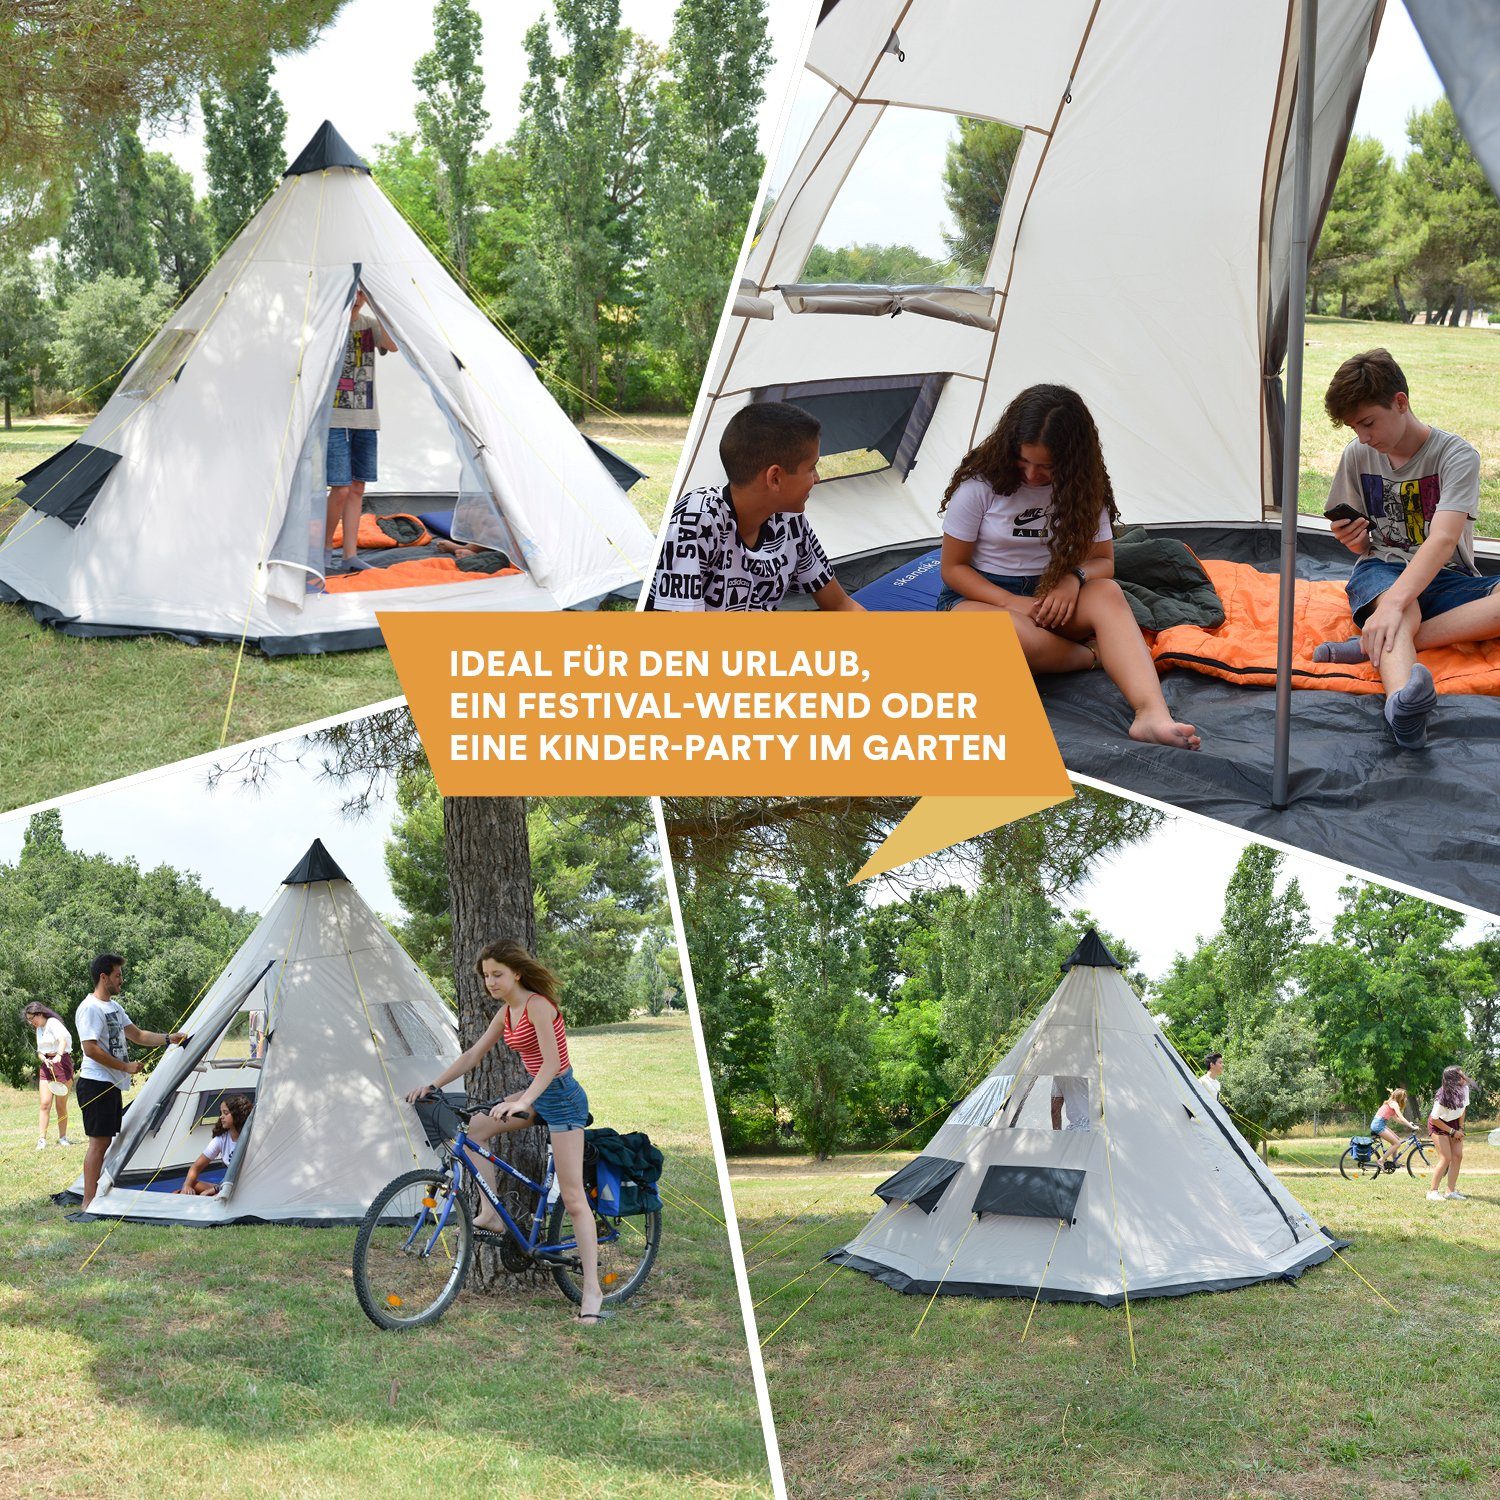 6 (beige/d'grau), wasserfest, Outdoorzelt Campingzelt, Zeltboden Tipii Tipi-Zelt Personen Skandika eingenähter